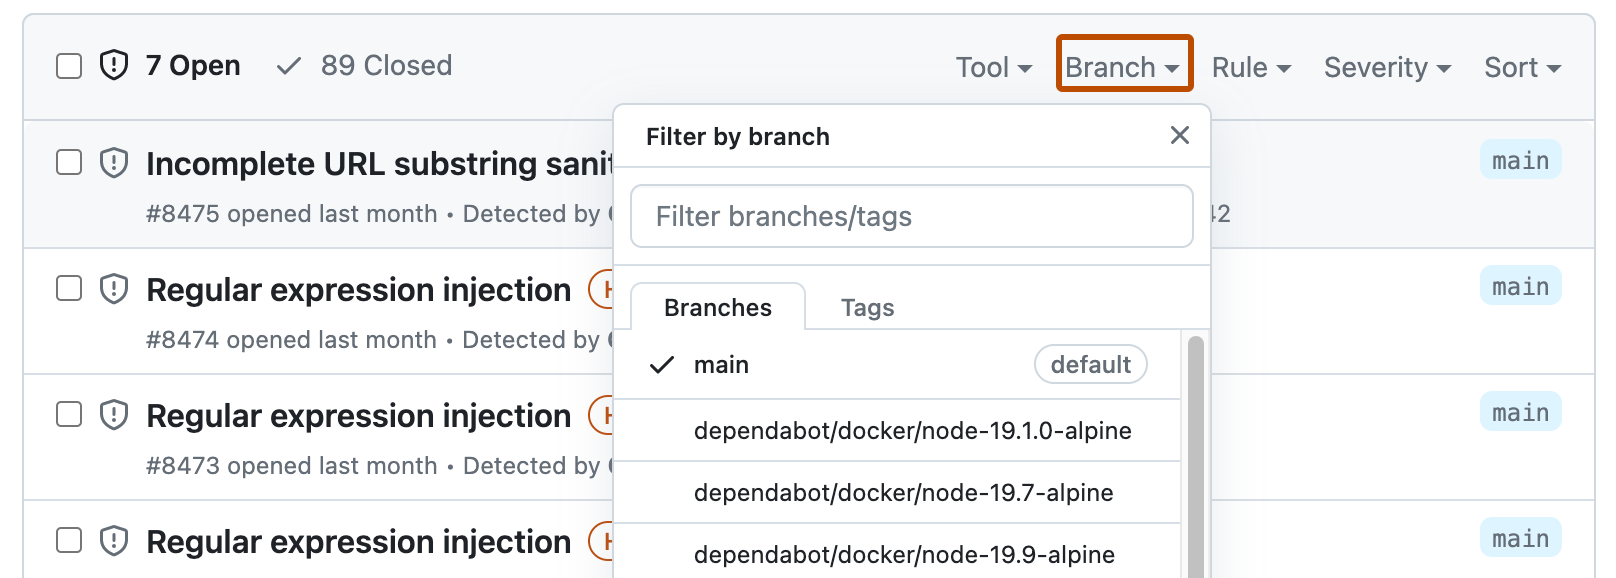 Captura de tela do campo de pesquisa na code scanning, com o menu suspenso "Branch" expandido. O botão "Branch" está realçado em laranja escuro.